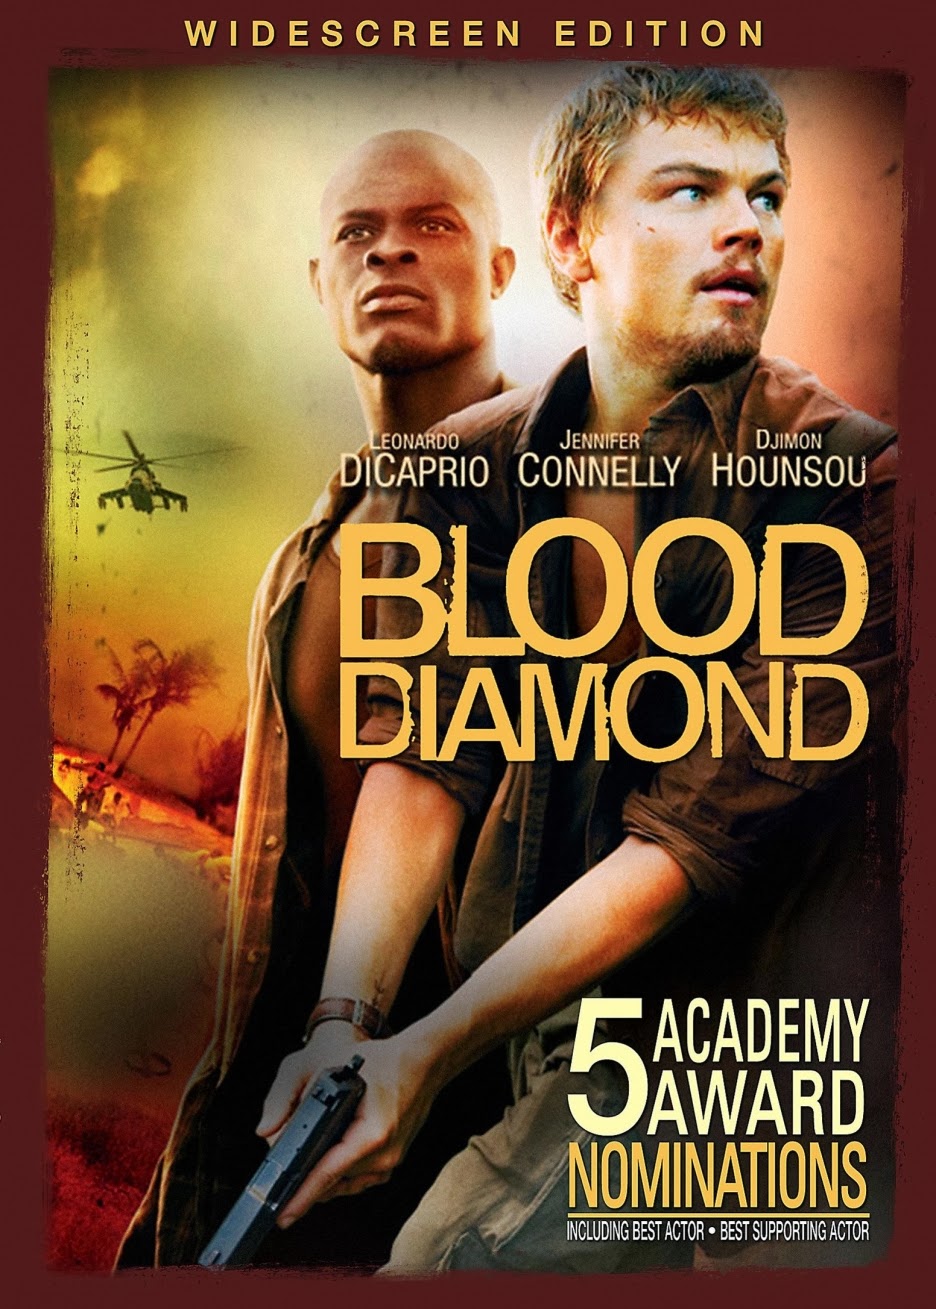 blood diamond movie review summary